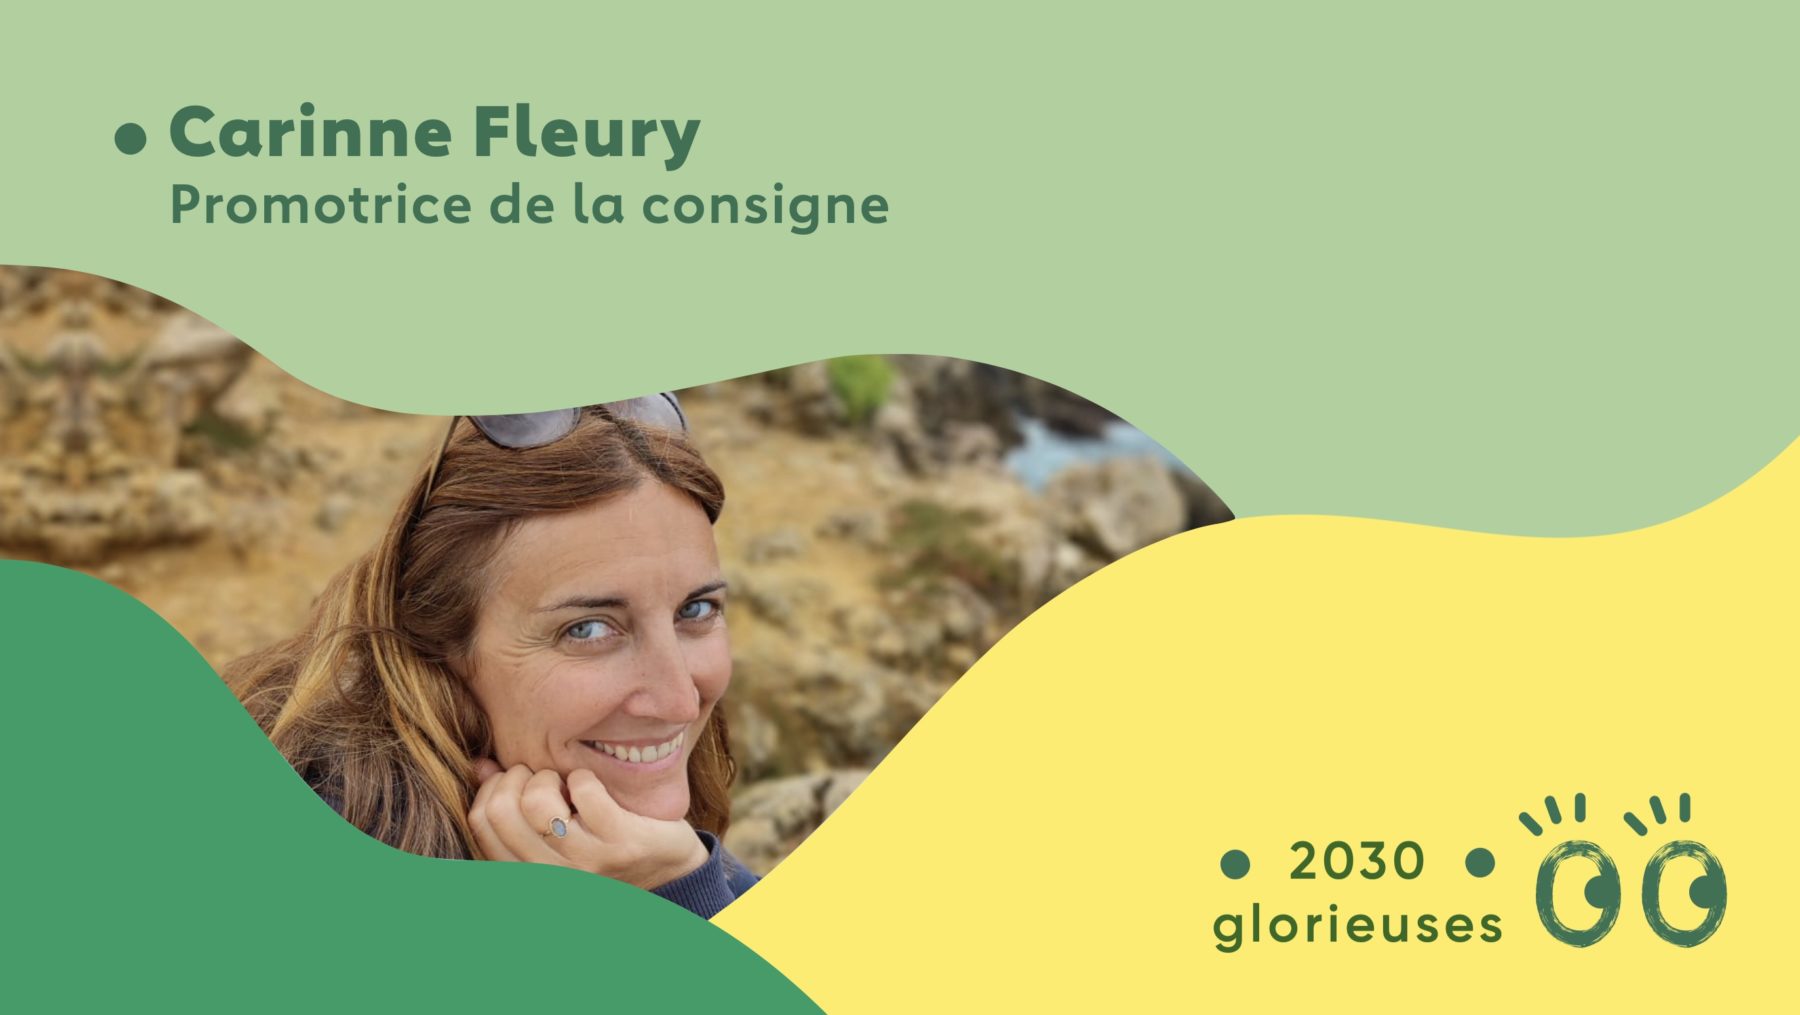 2030 Glorieuses #72 : Carinne Fleury : “Le retour de la consigne, ce n'est pas du tout un retour en arrière, au contraire c'est une avancée !"